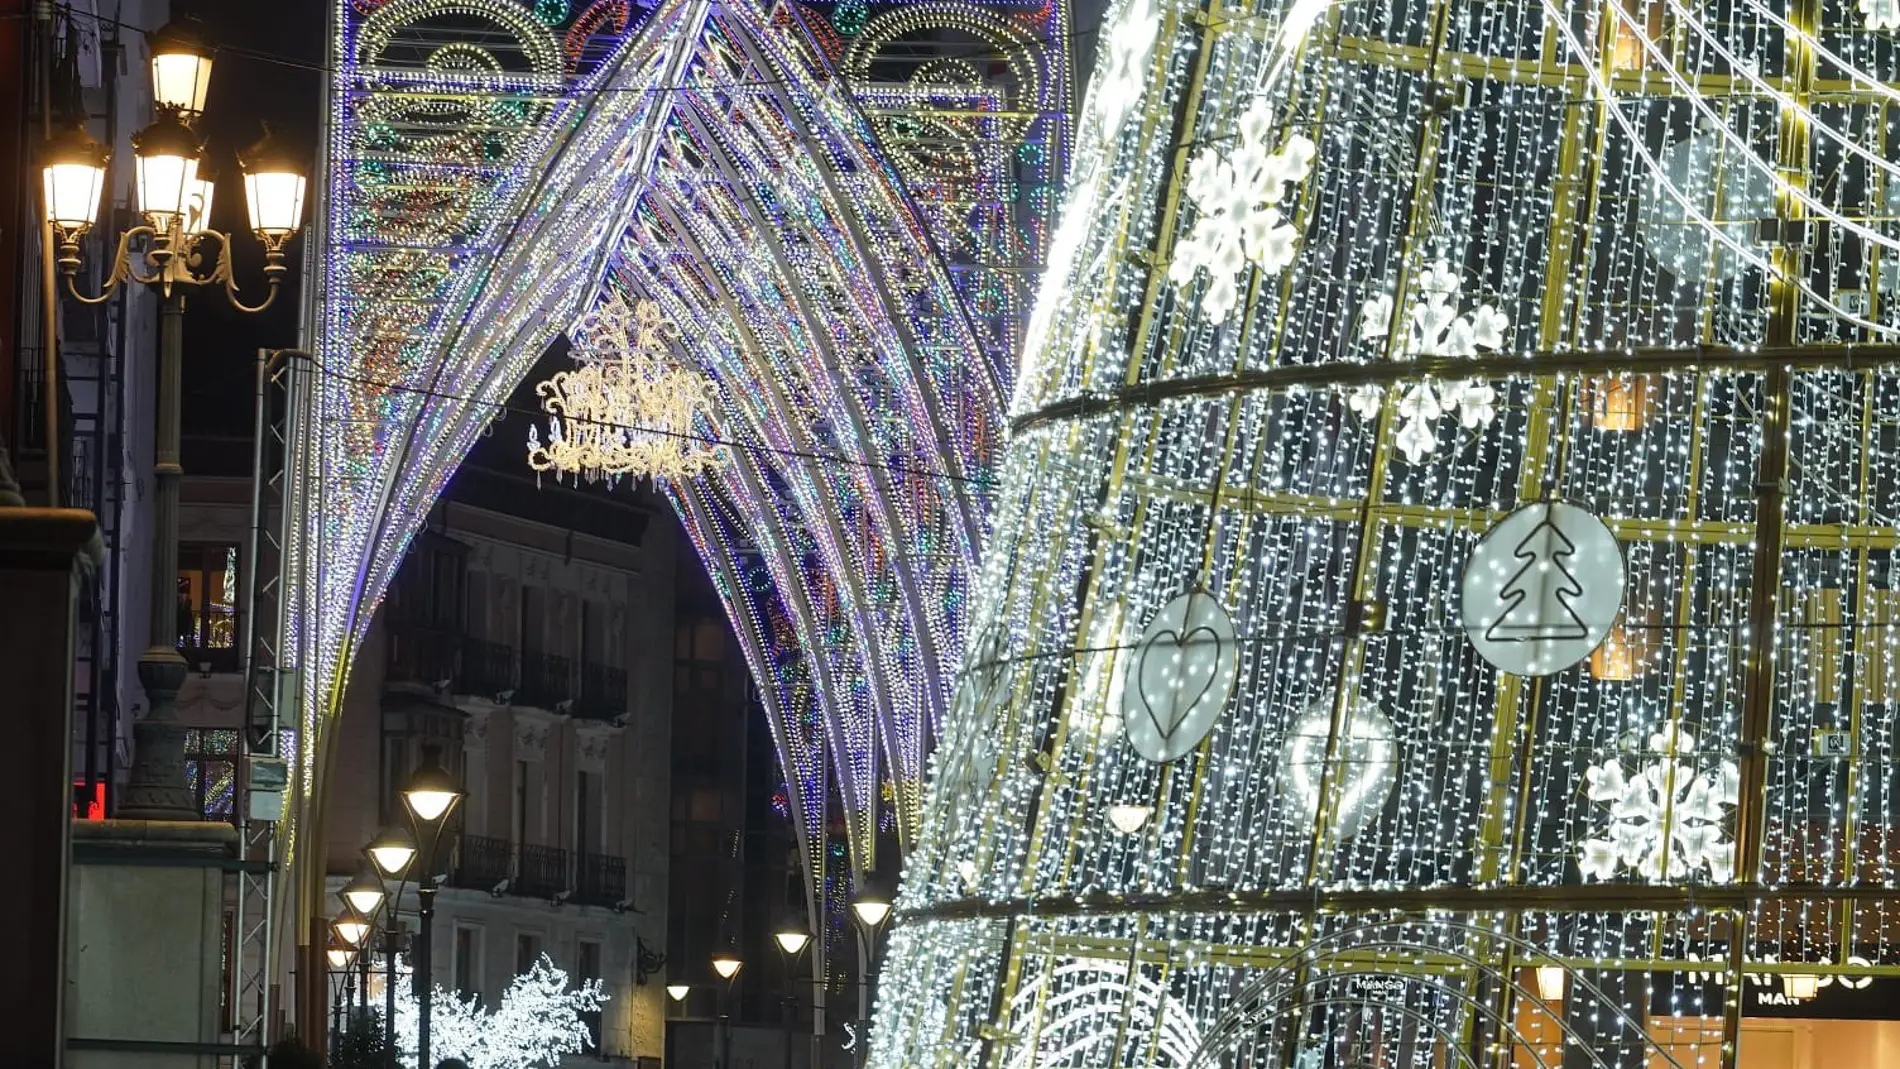 Encendido luces de navidad Valladolid 2021: cuándo es, horario y ubicación